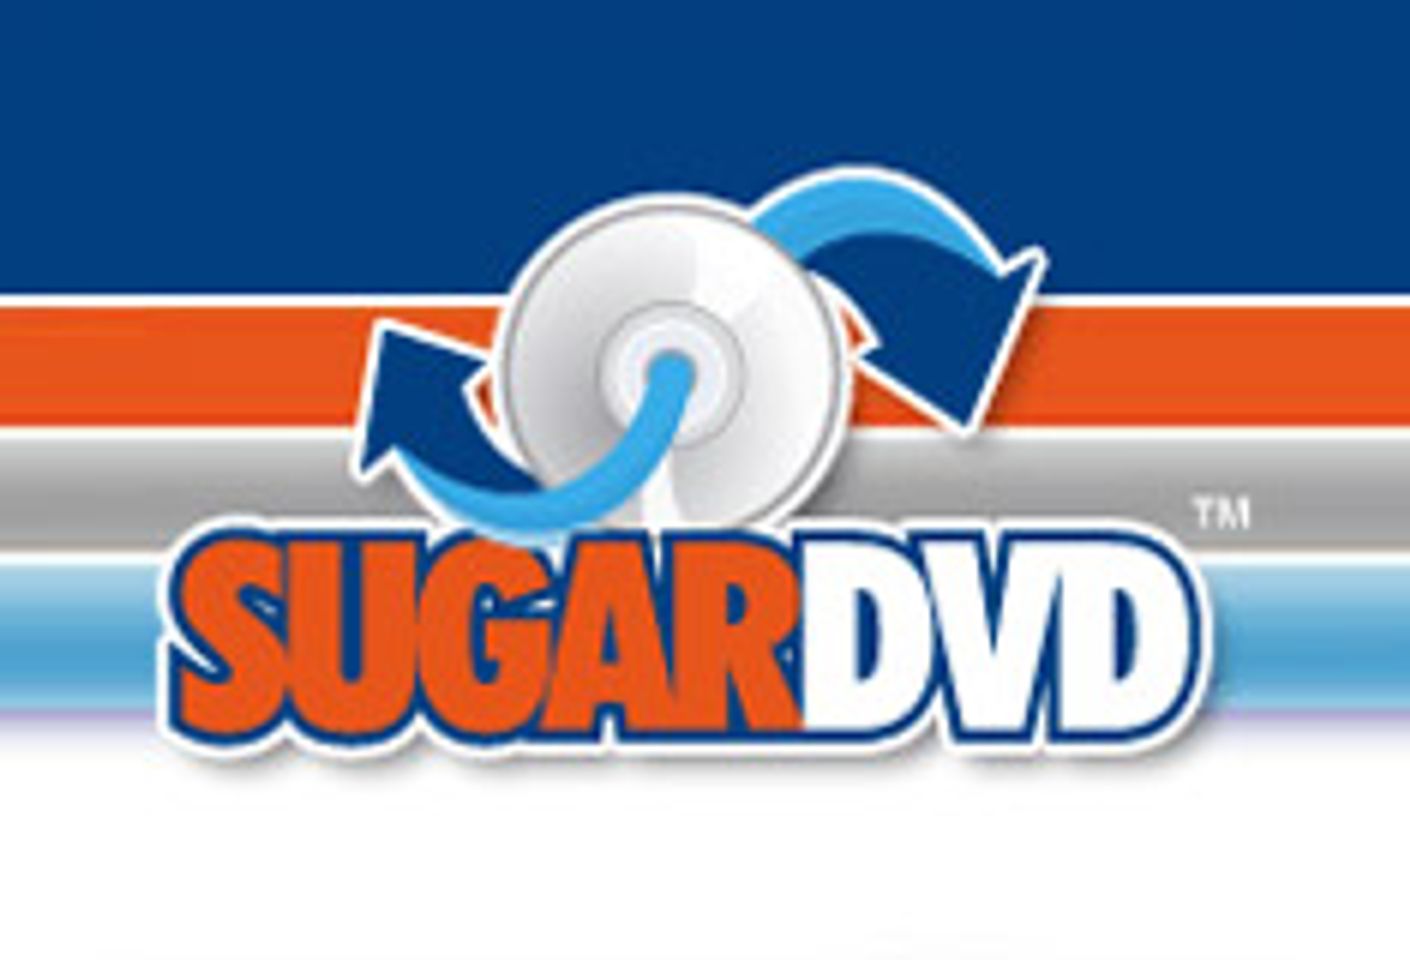 SugarDVD Makes Sirius Advertising Deal